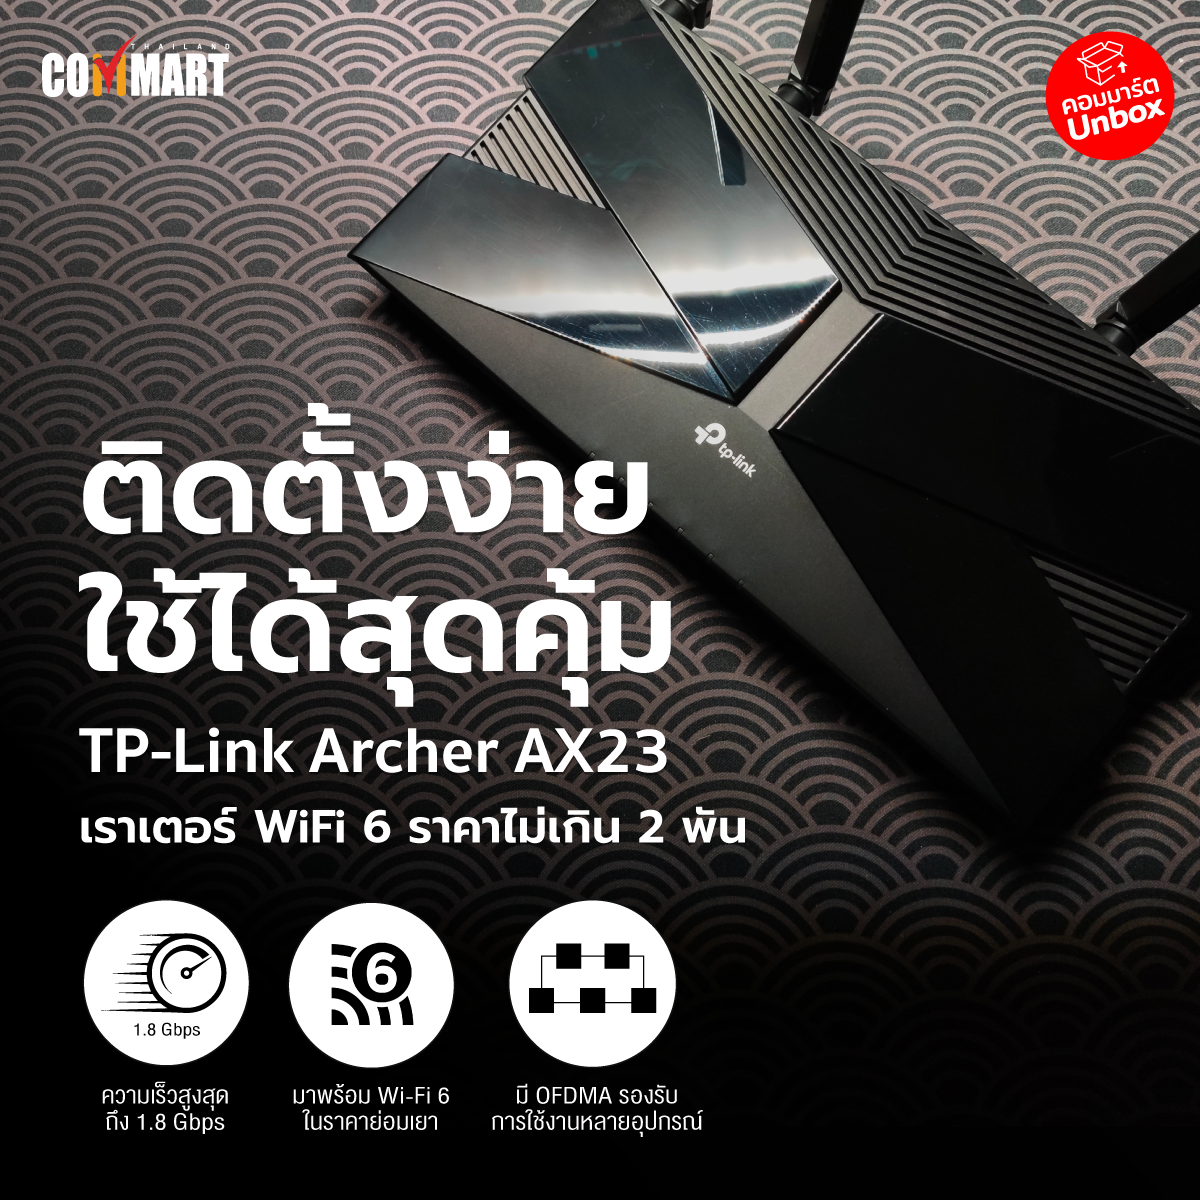 รีวิว : TP-Link Archer AX23 เราเตอร์ Wi-Fi 6 ไม่เกิน 2 พันบาท ใช้ง่ายติดตั้งง่าย